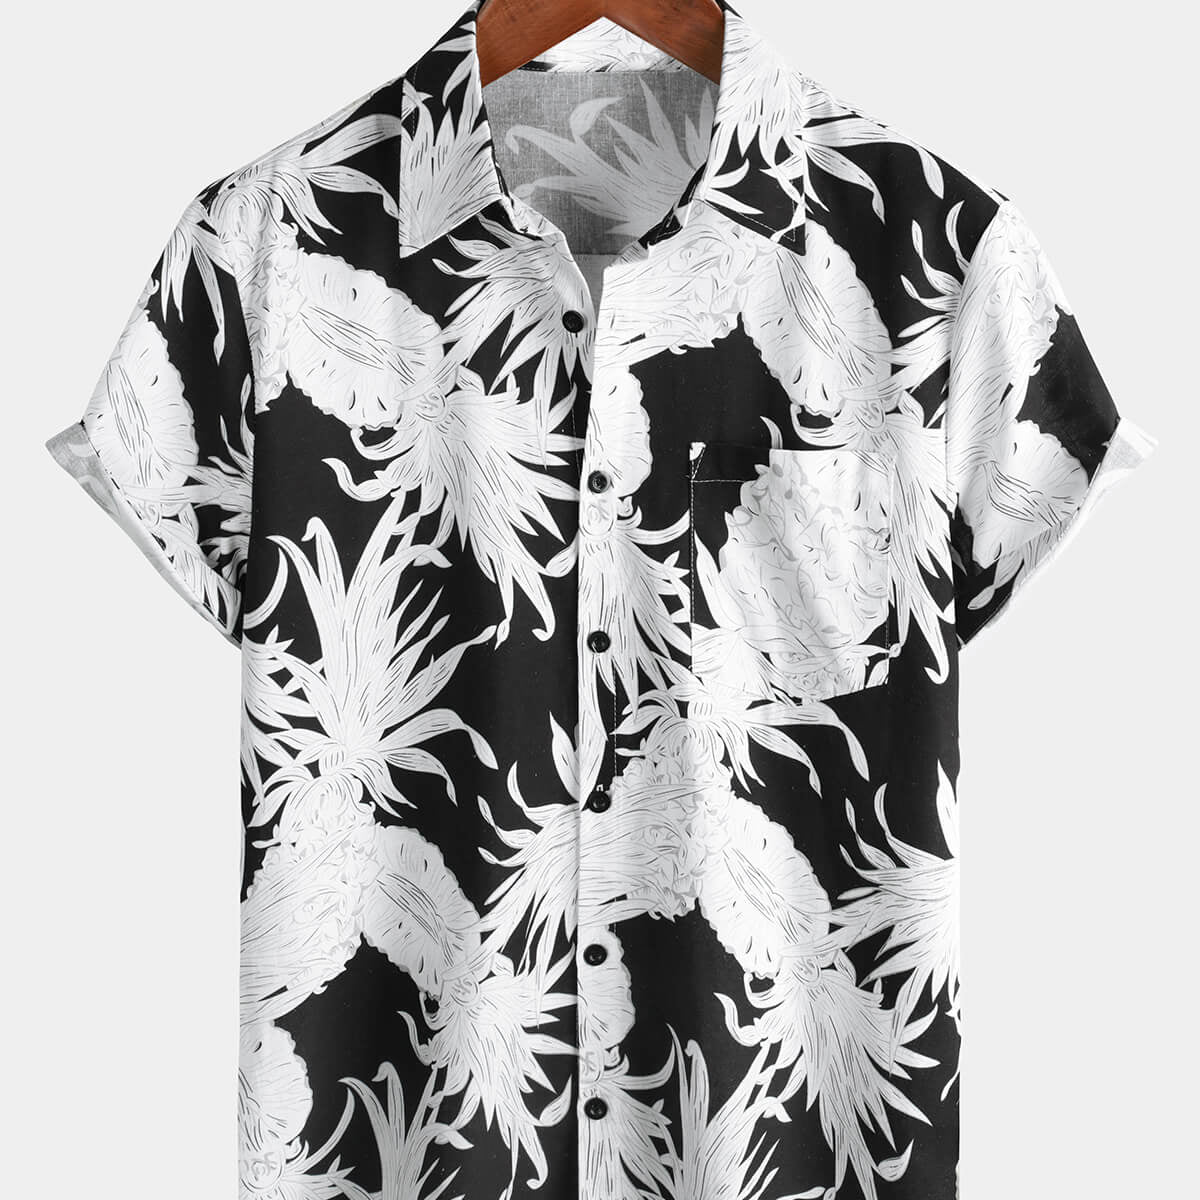 Camisa hawaiana de manga corta con botones en blanco y negro de lino y algodón con estampado de piña para hombre